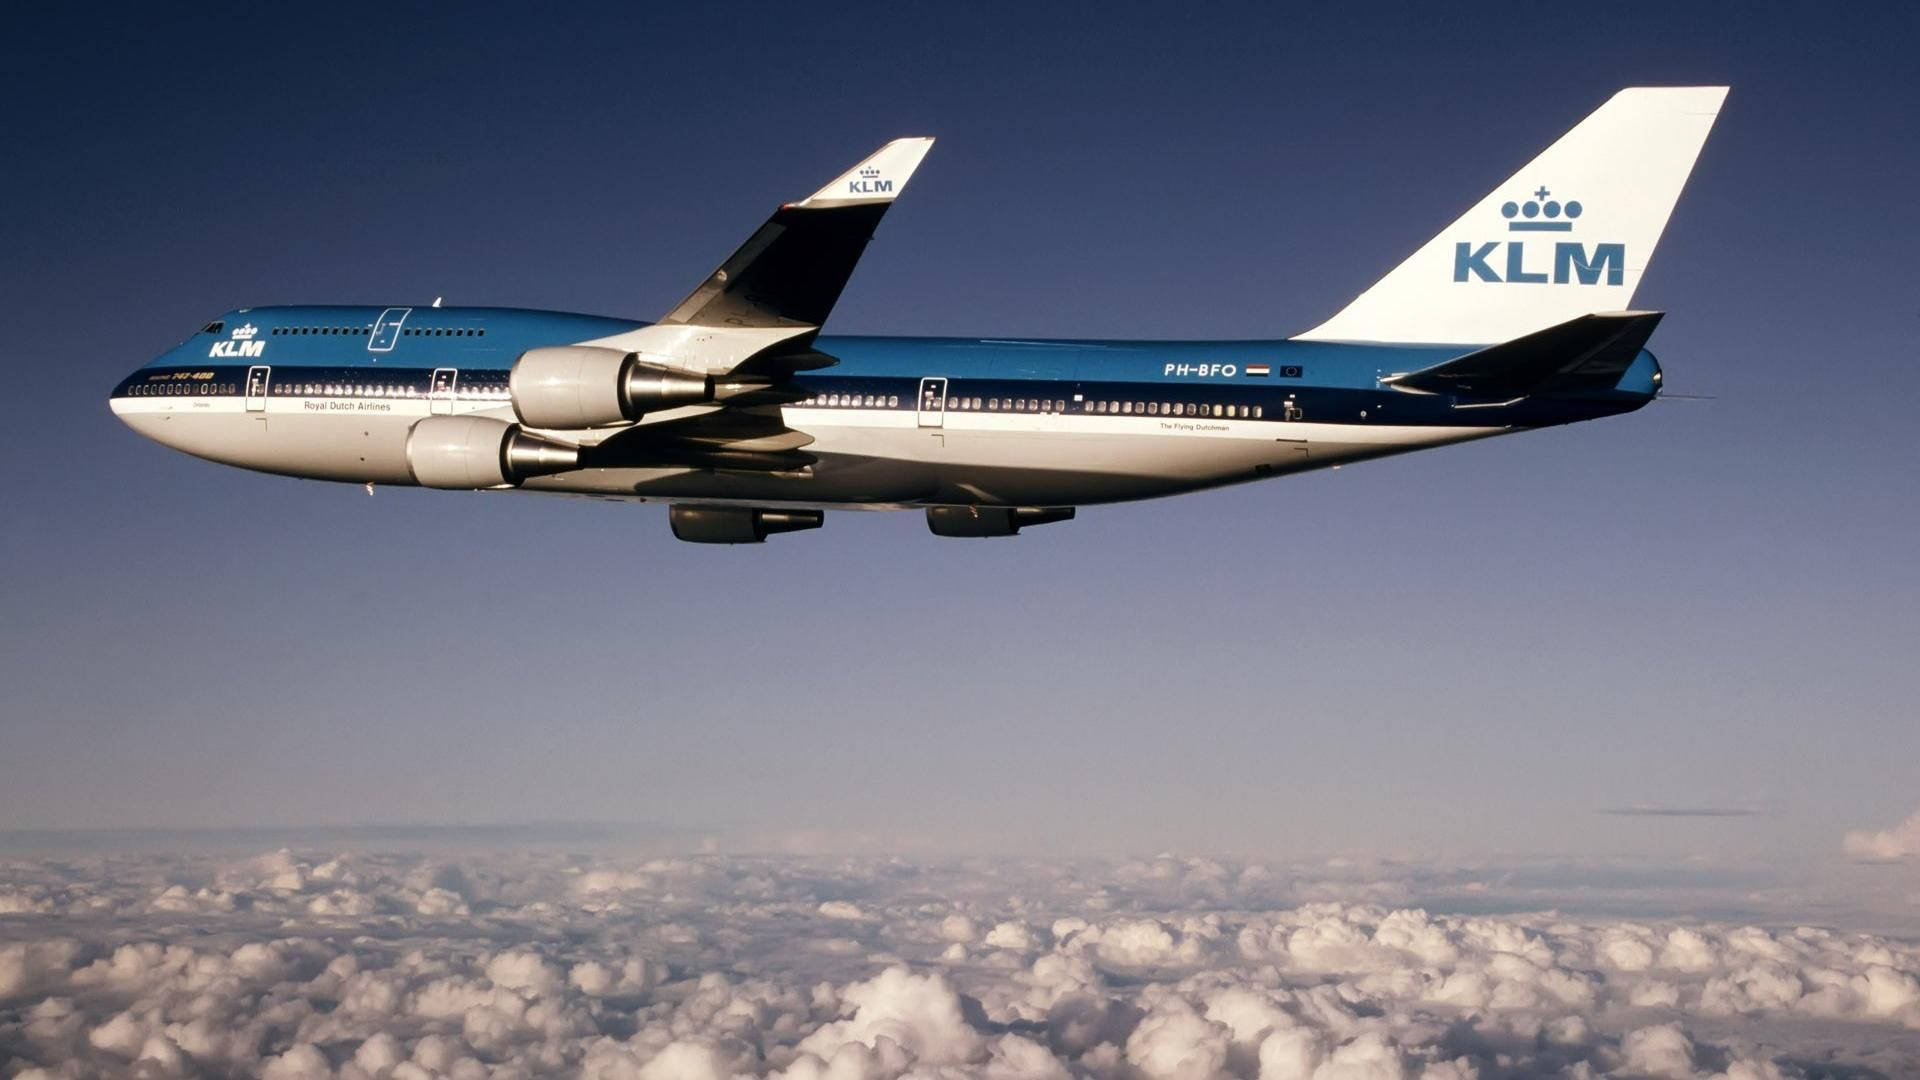  Boeing Hintergrundbild 1920x1080. Download Boeing 747 206BM KLM Wallpaper